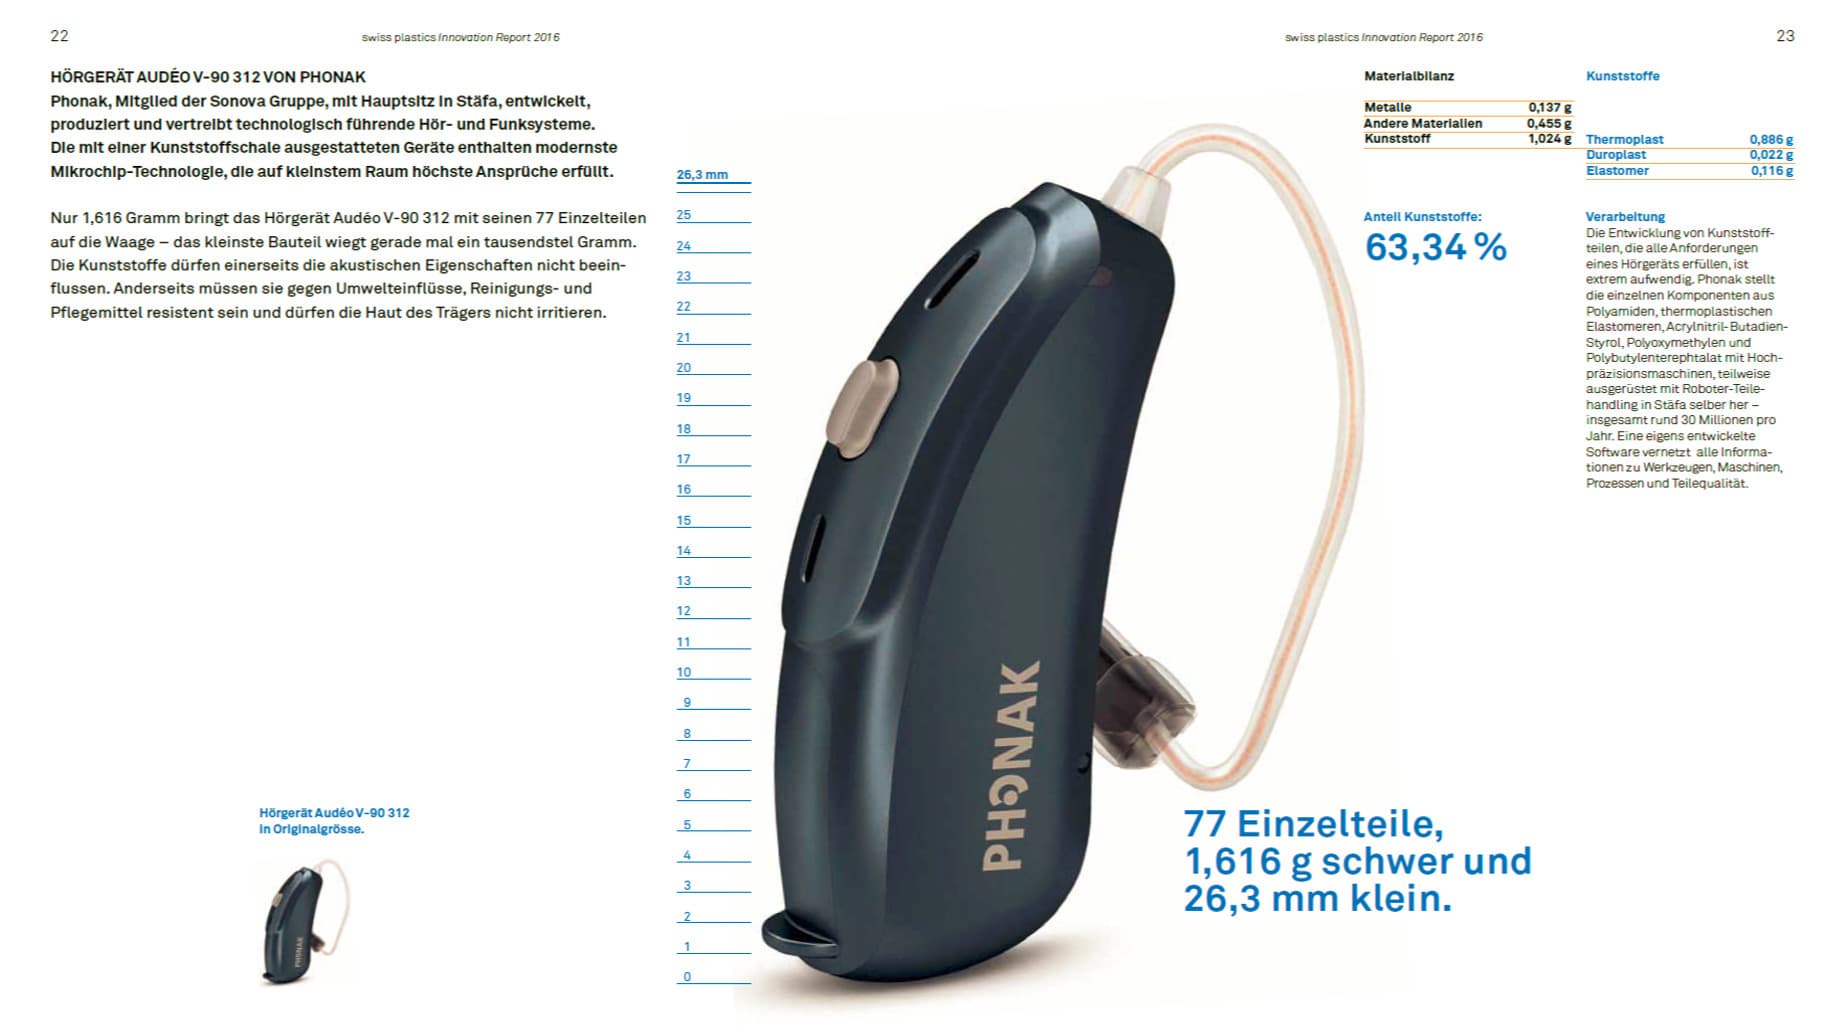 Hörgerät Audeo V-90312 von Phonak, ermöglicht dank Kunststoffen